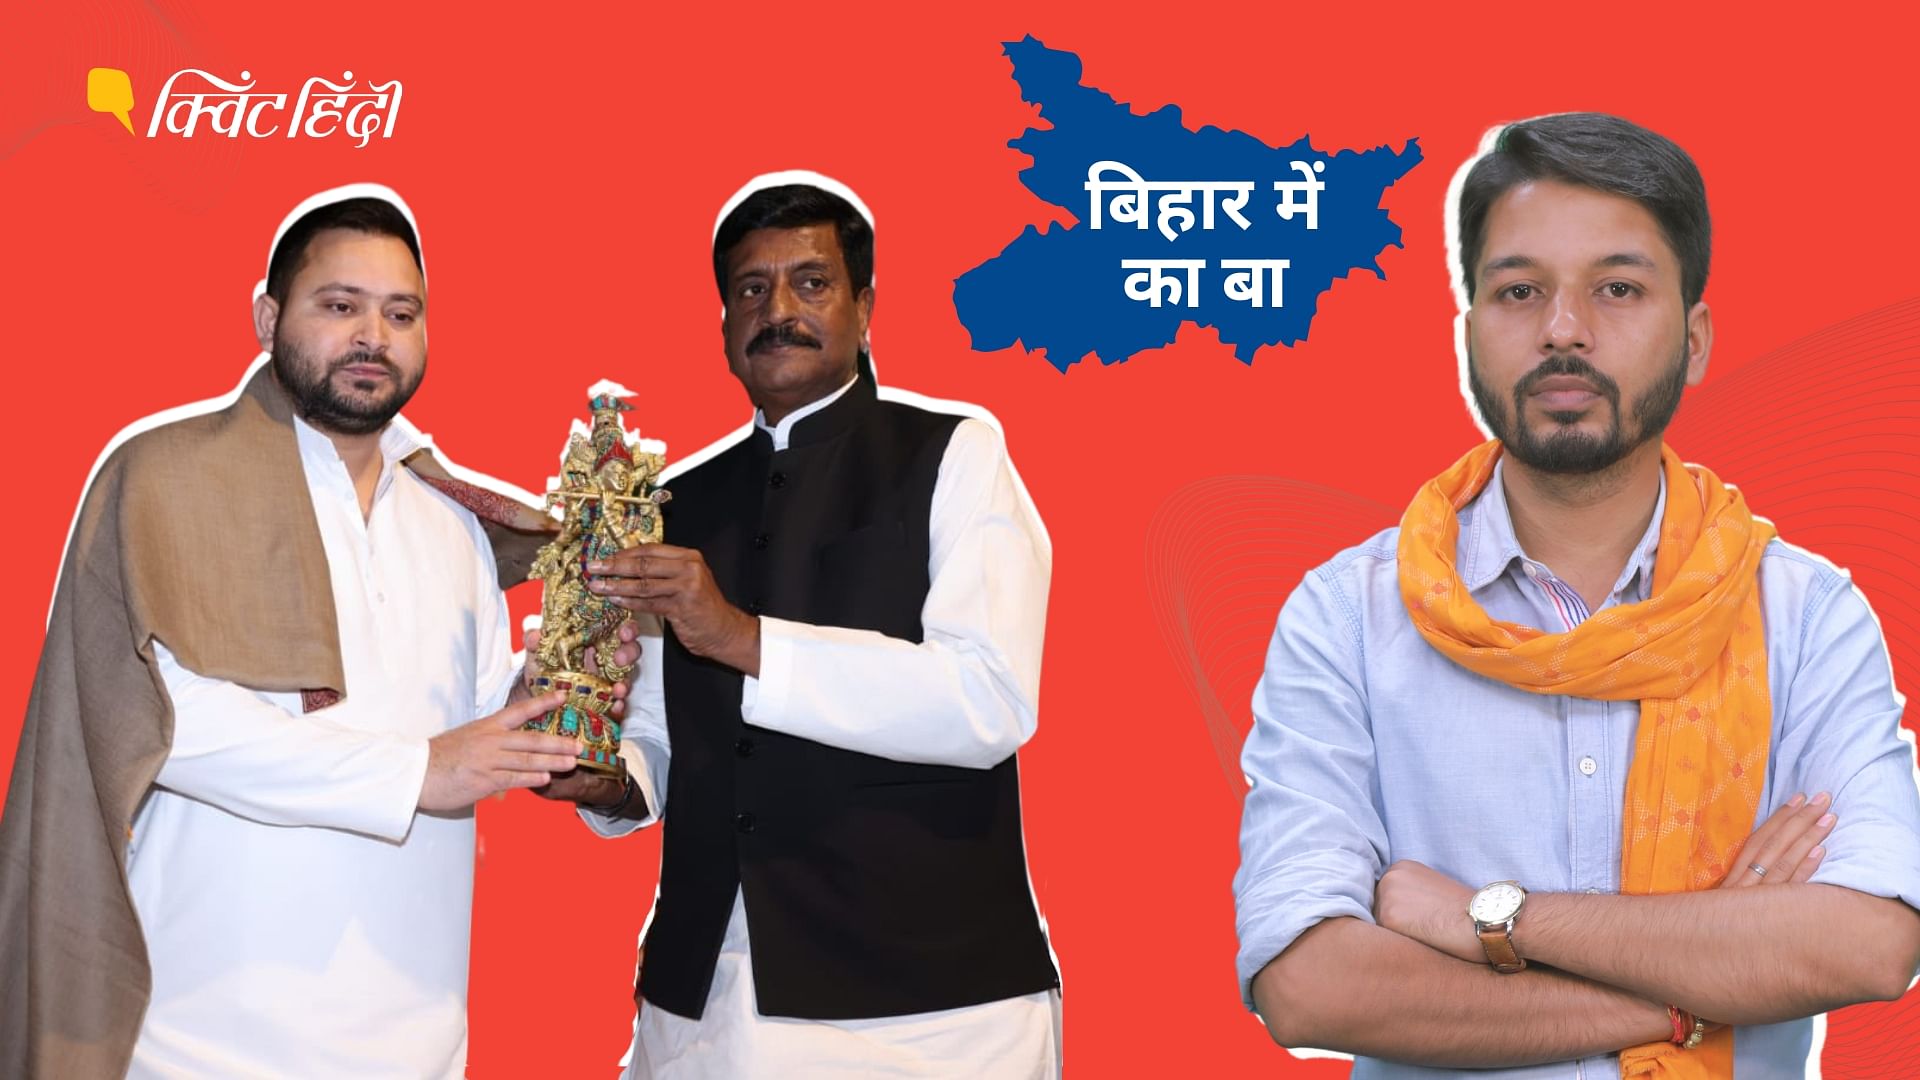 <div class="paragraphs"><p>Bihar Politics: बिहार की सियासत में नौकरशाही, क्या बदलेगी प्रदेश की राजनीति?</p></div>